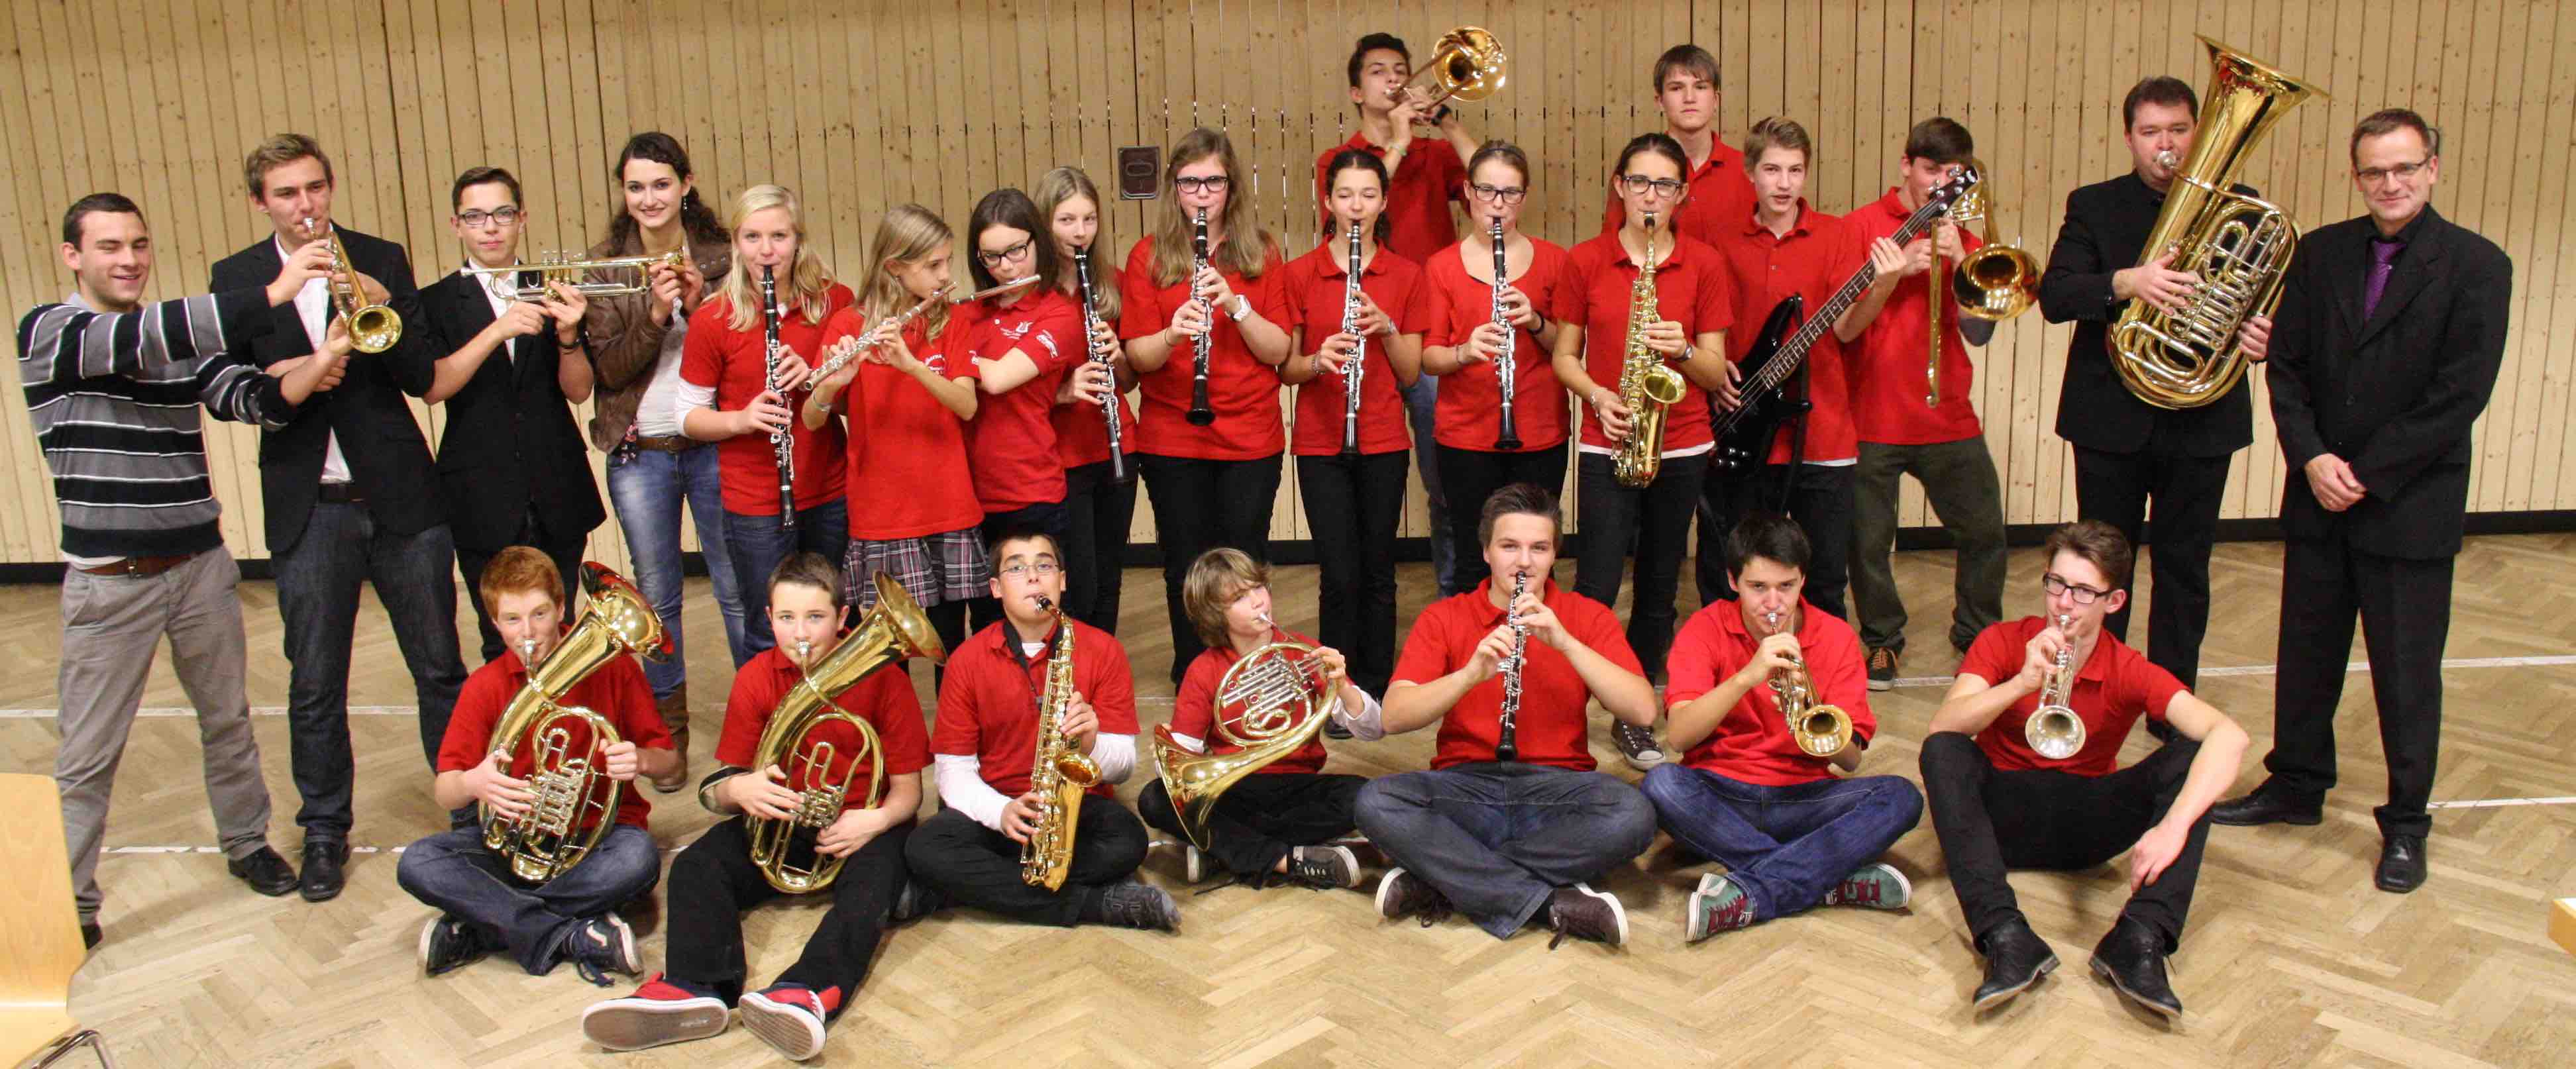 Bild der Jugend des Musikvereins Harmonie Oberachern